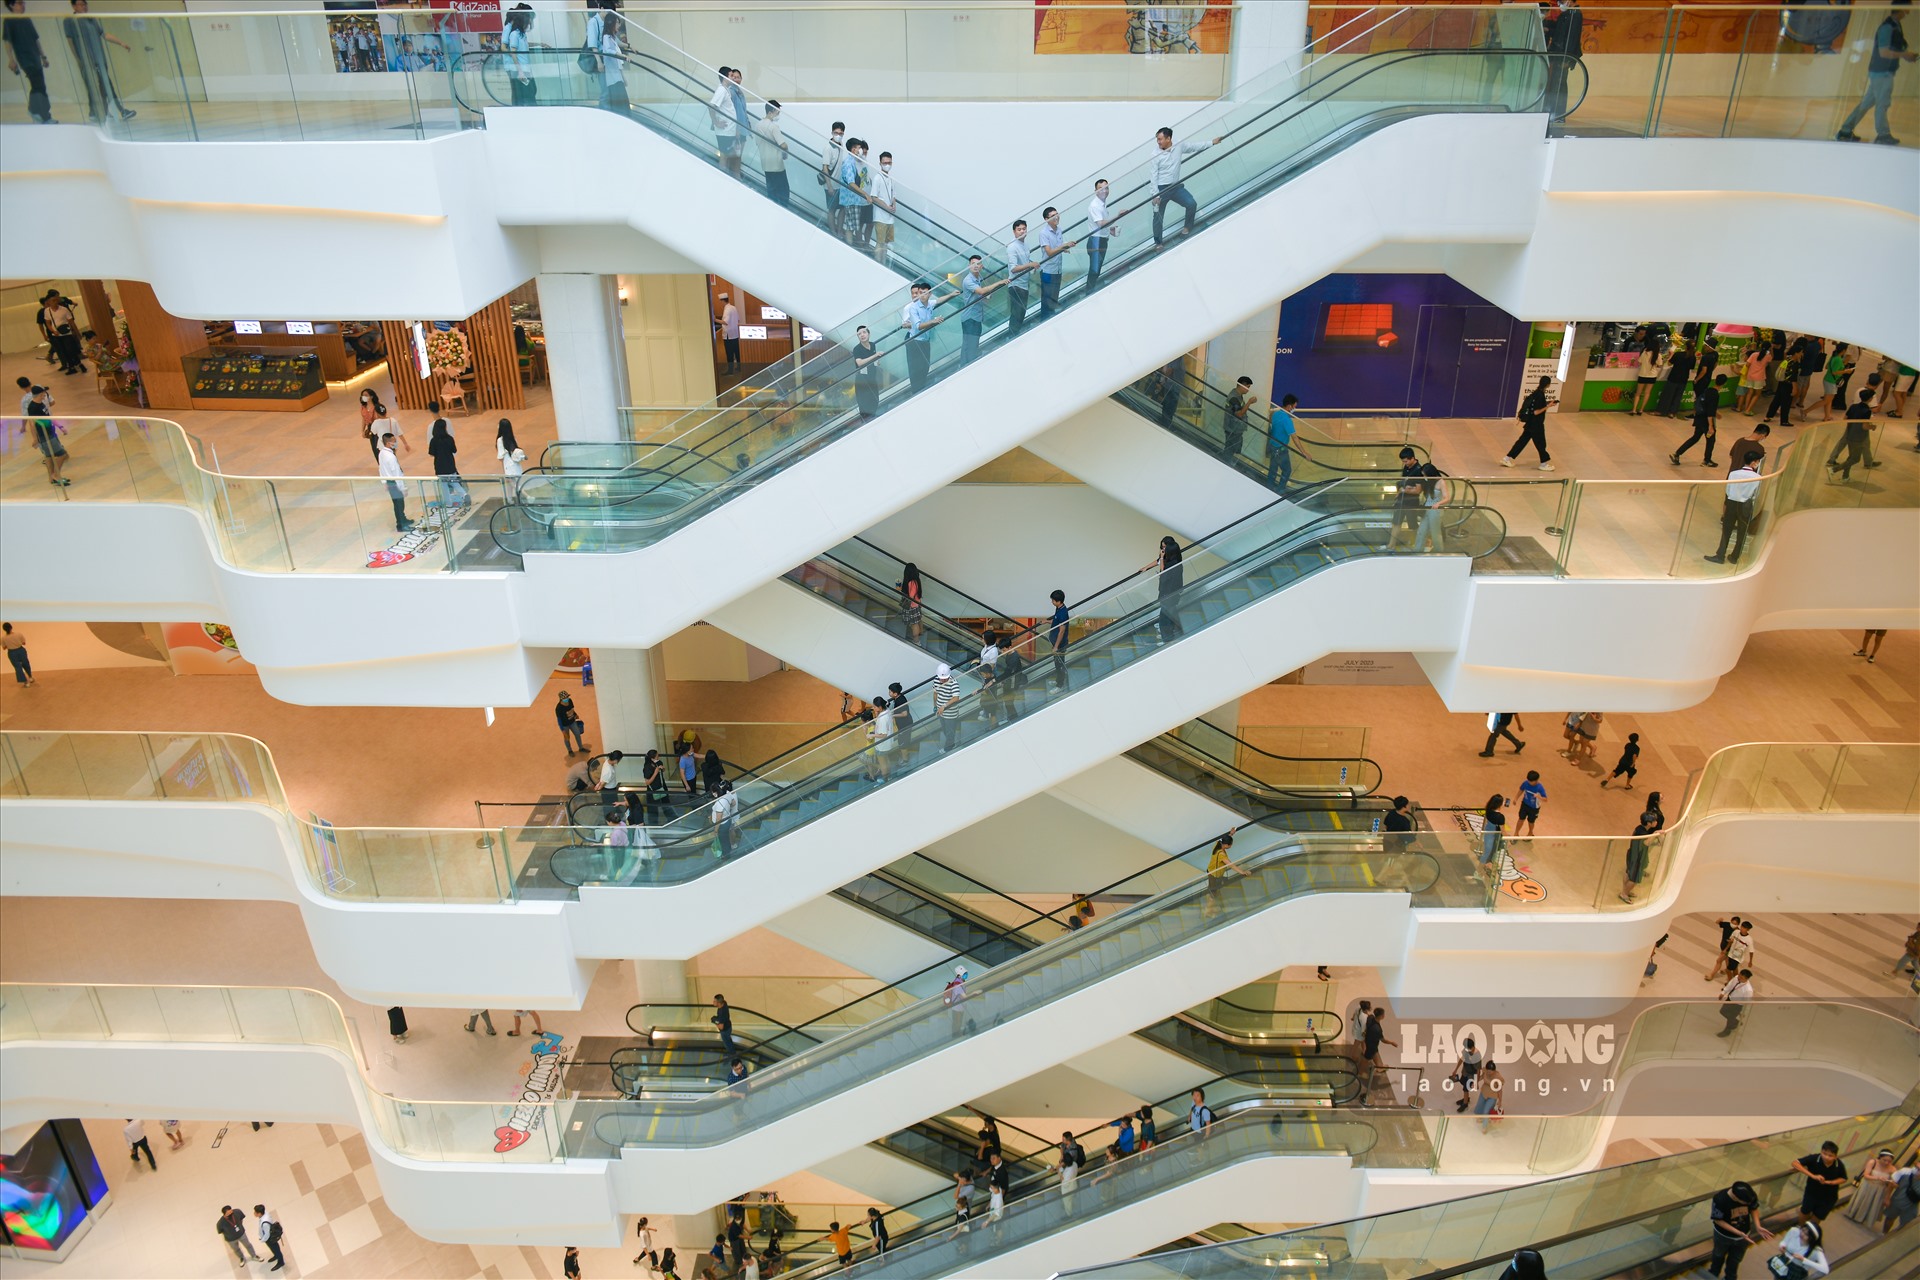 Trung tâm thương mại, phân khu chính của Lotte Mall West Lake Hanoi có quy mô 7 tầng, bao gồm 5 tầng nổi và 2 tầng hầm